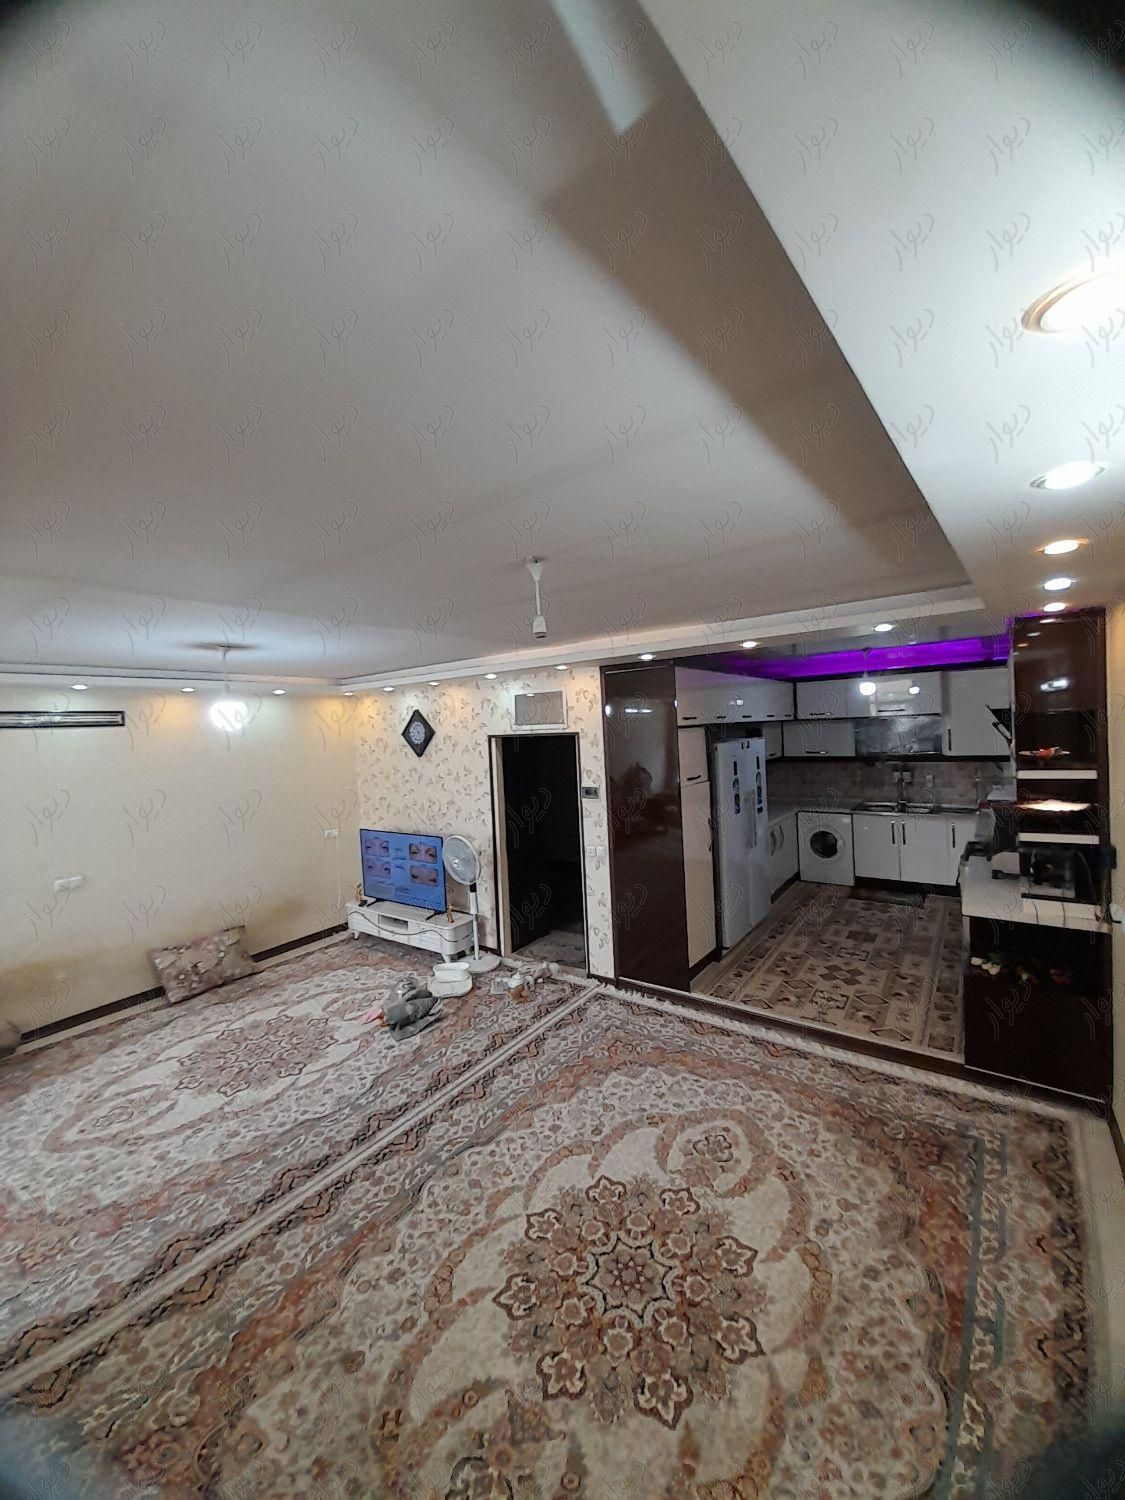 منزل ویلایی دو طبقه|فروش خانه و ویلا|اصفهان, عمان سامانی|دیوار